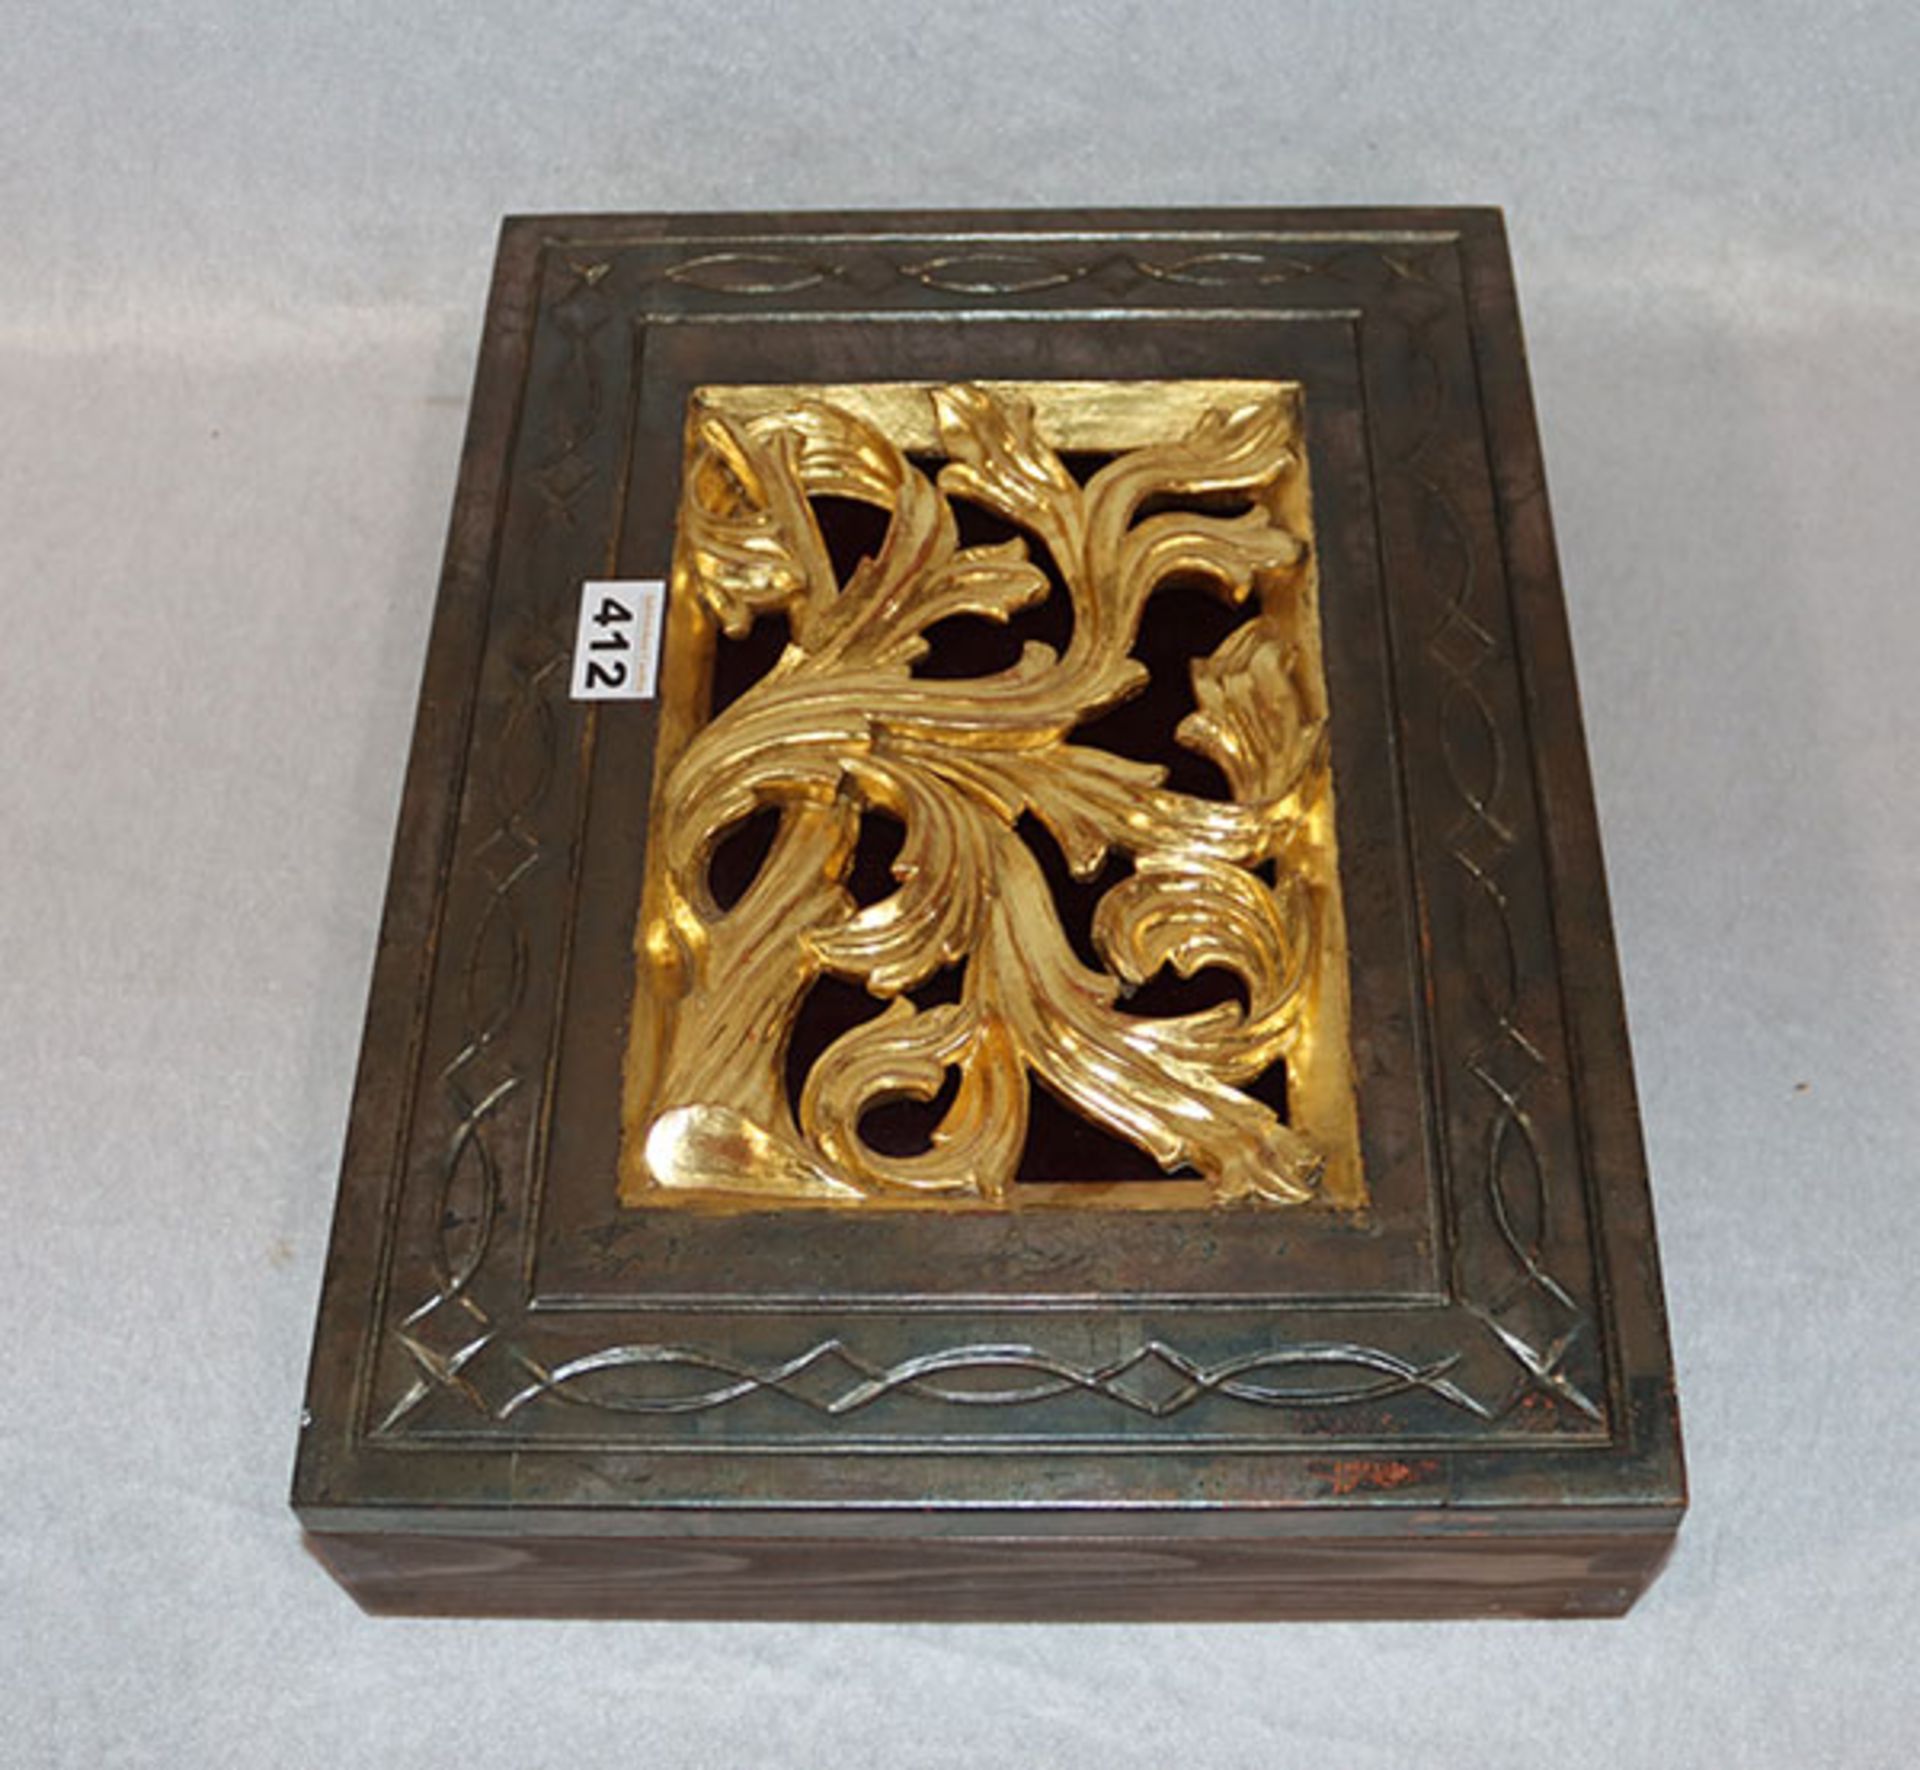 Holz Schlüsselkasten mit goldfarbener Ornamentverzierung, aufklappbar, 39,5 cm x 30 cm, T 8 cm,